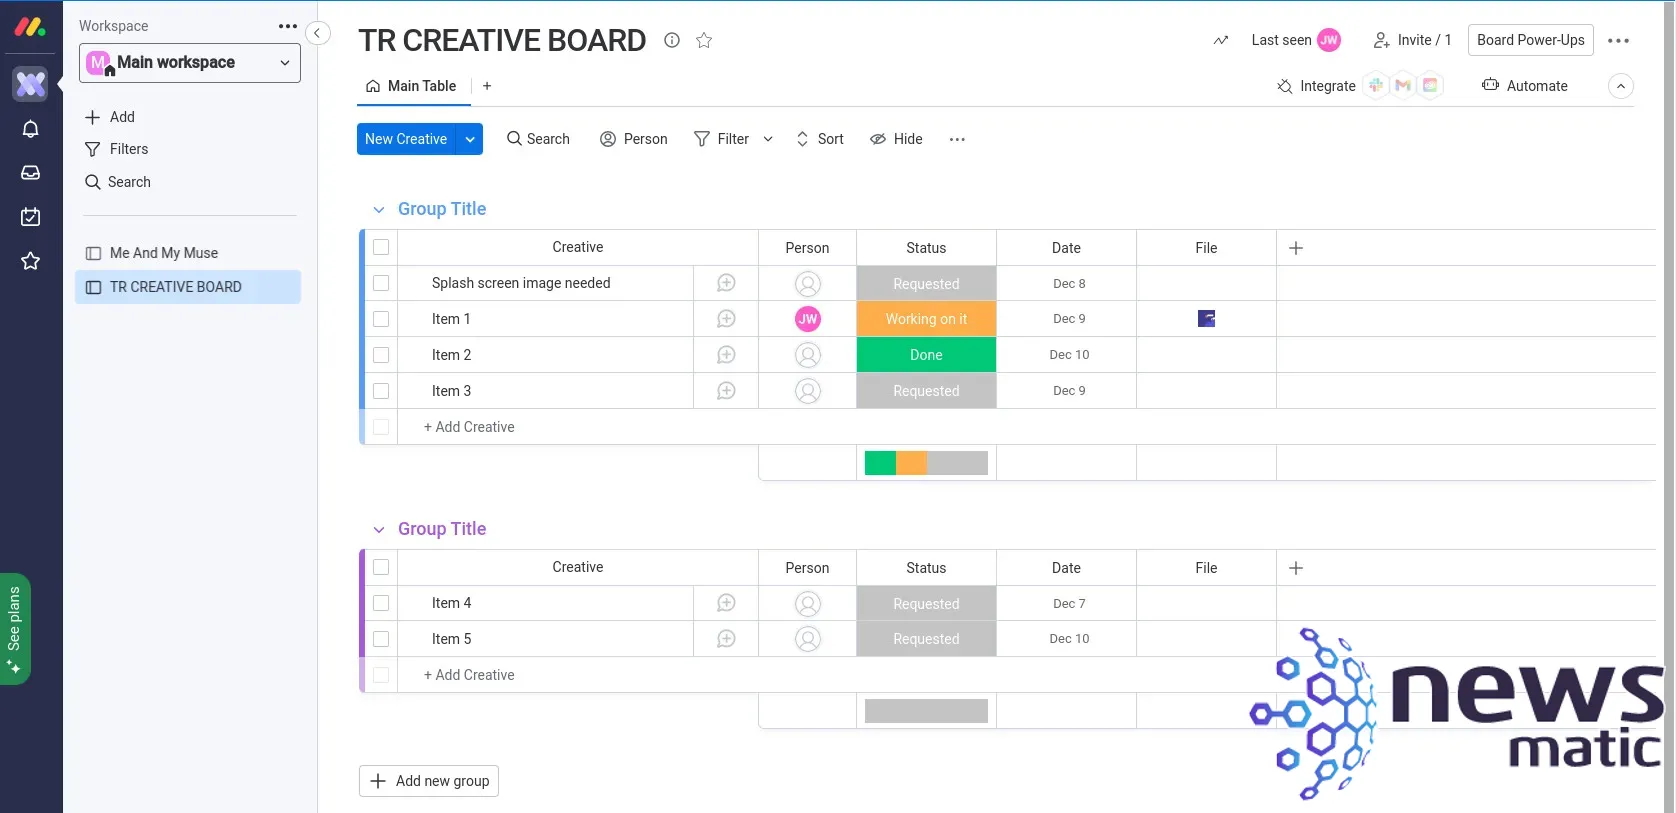 Cómo crear un tablero de proyectos creativos en monday work management - Software | Imagen 4 Newsmatic